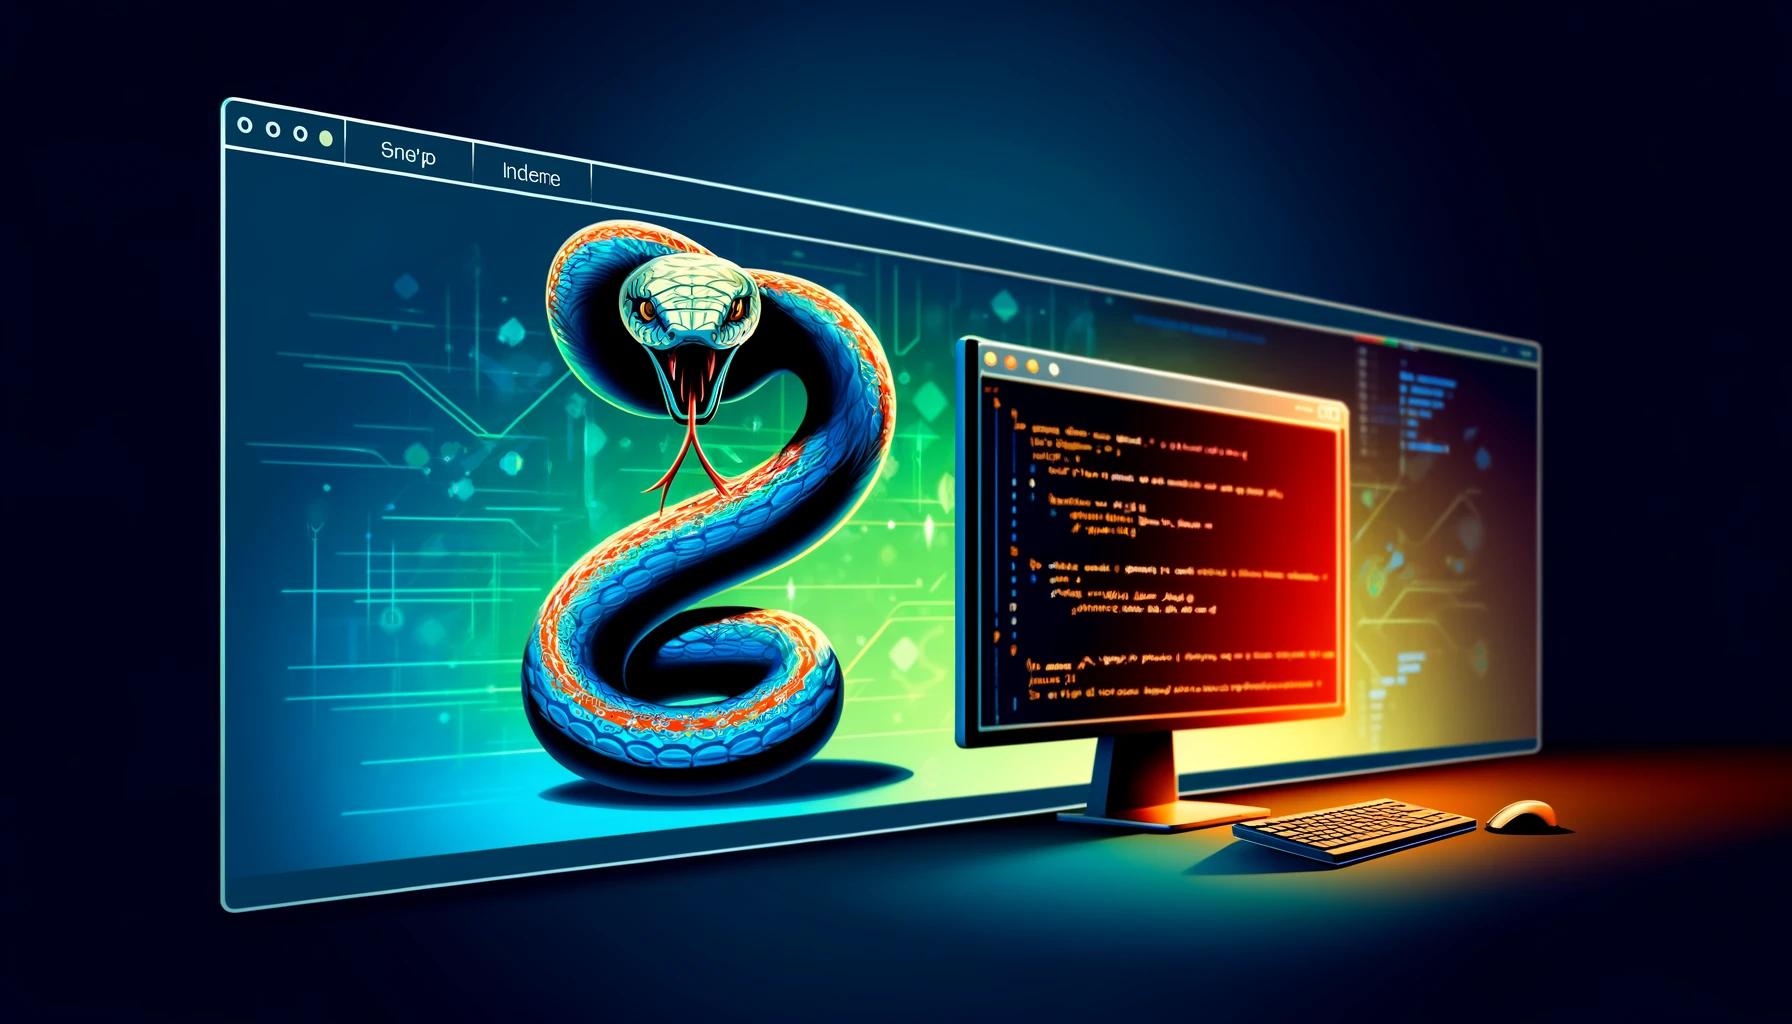 Python Programlama